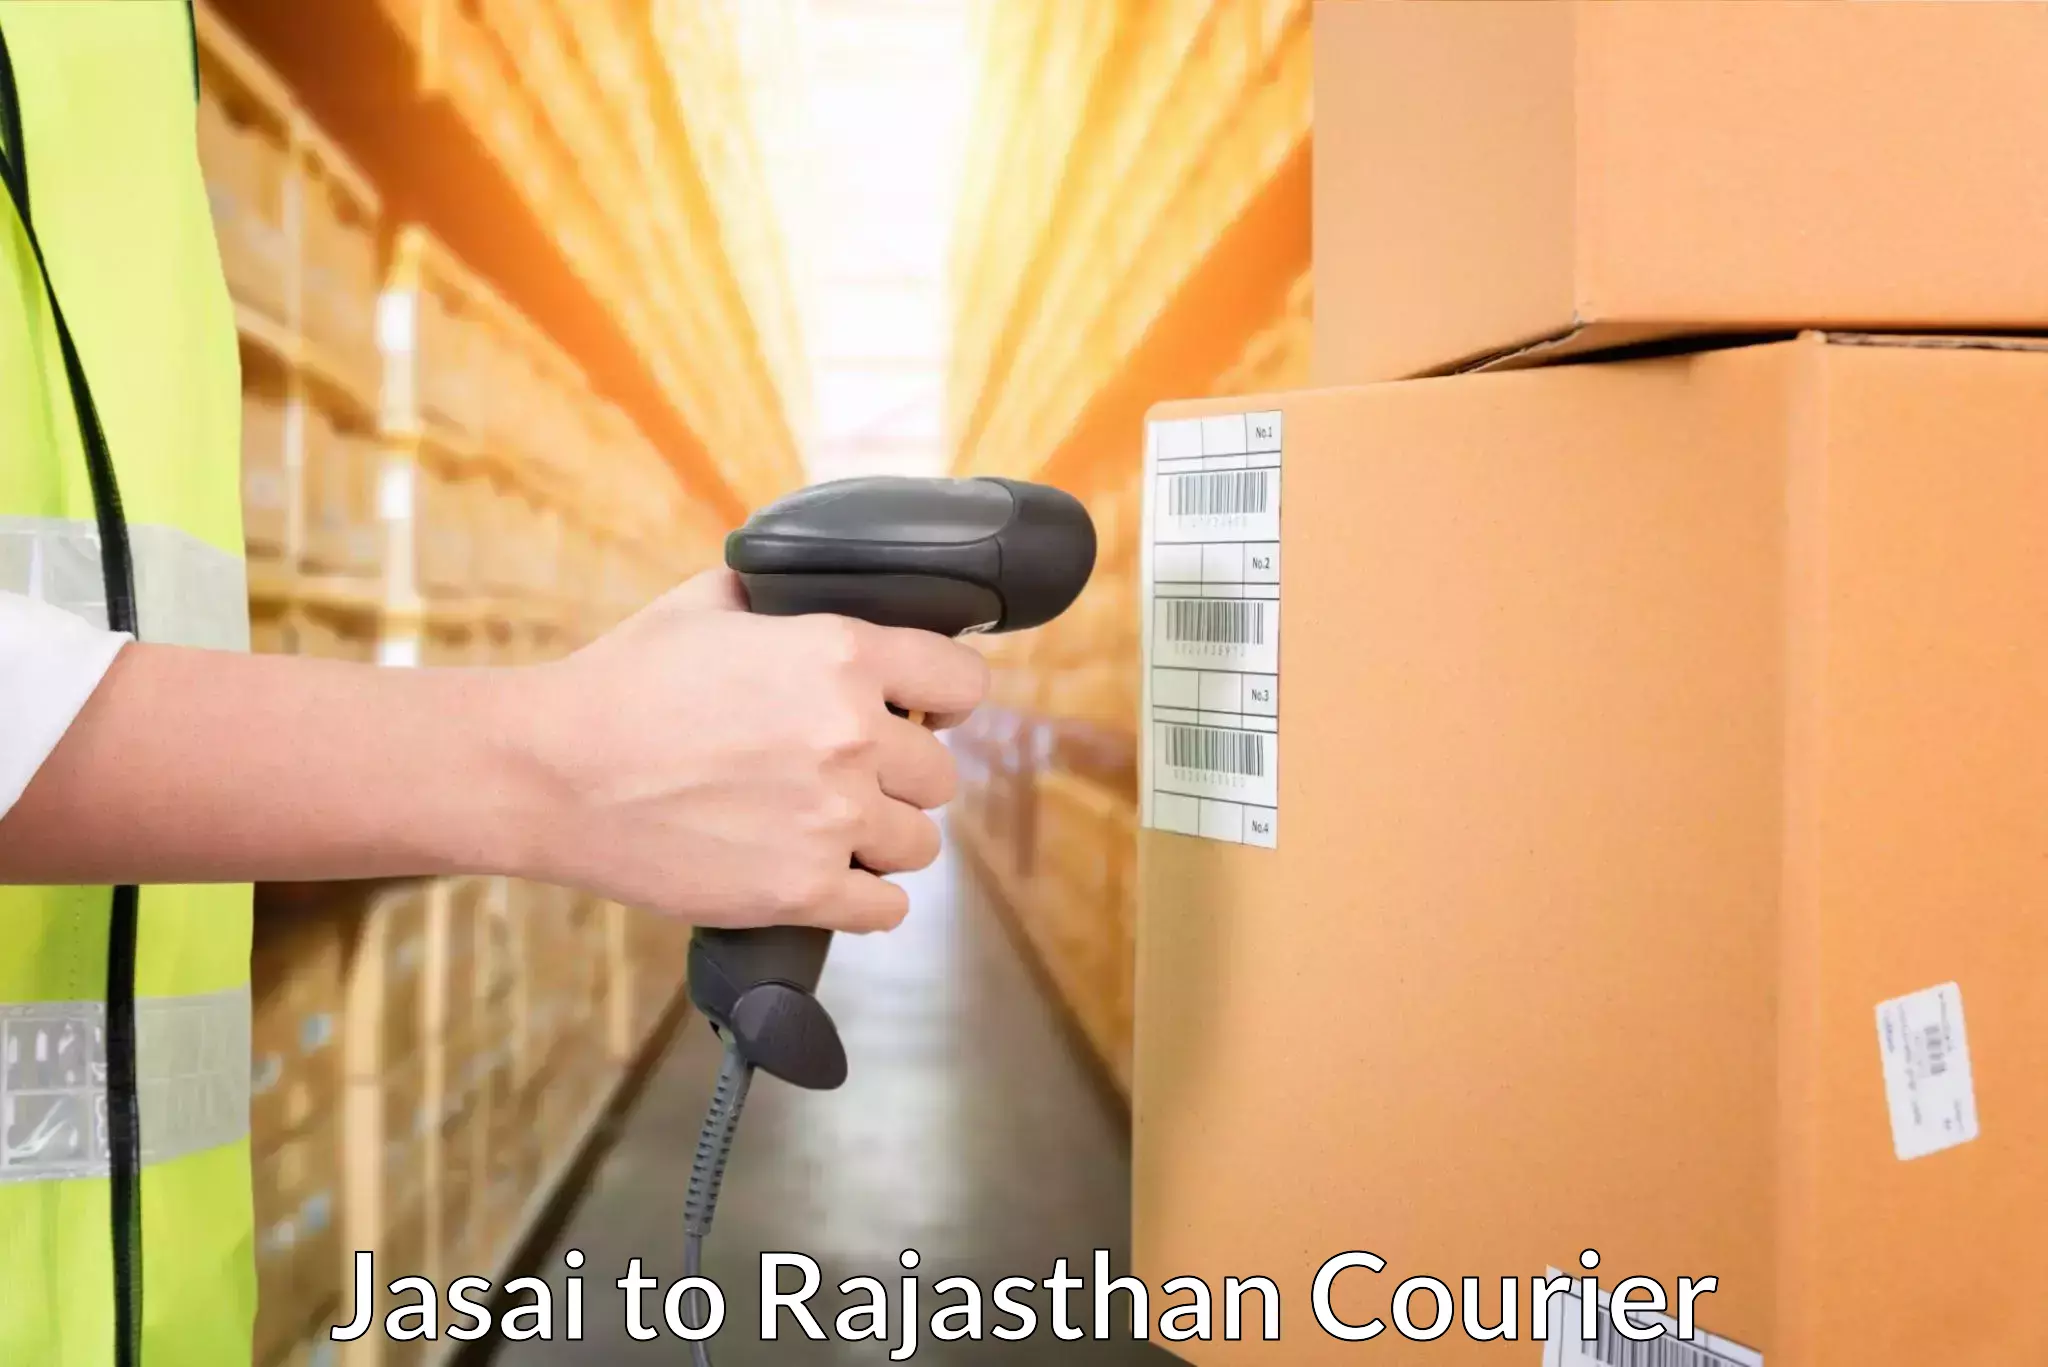 Global logistics network Jasai to Jawahar Nagar